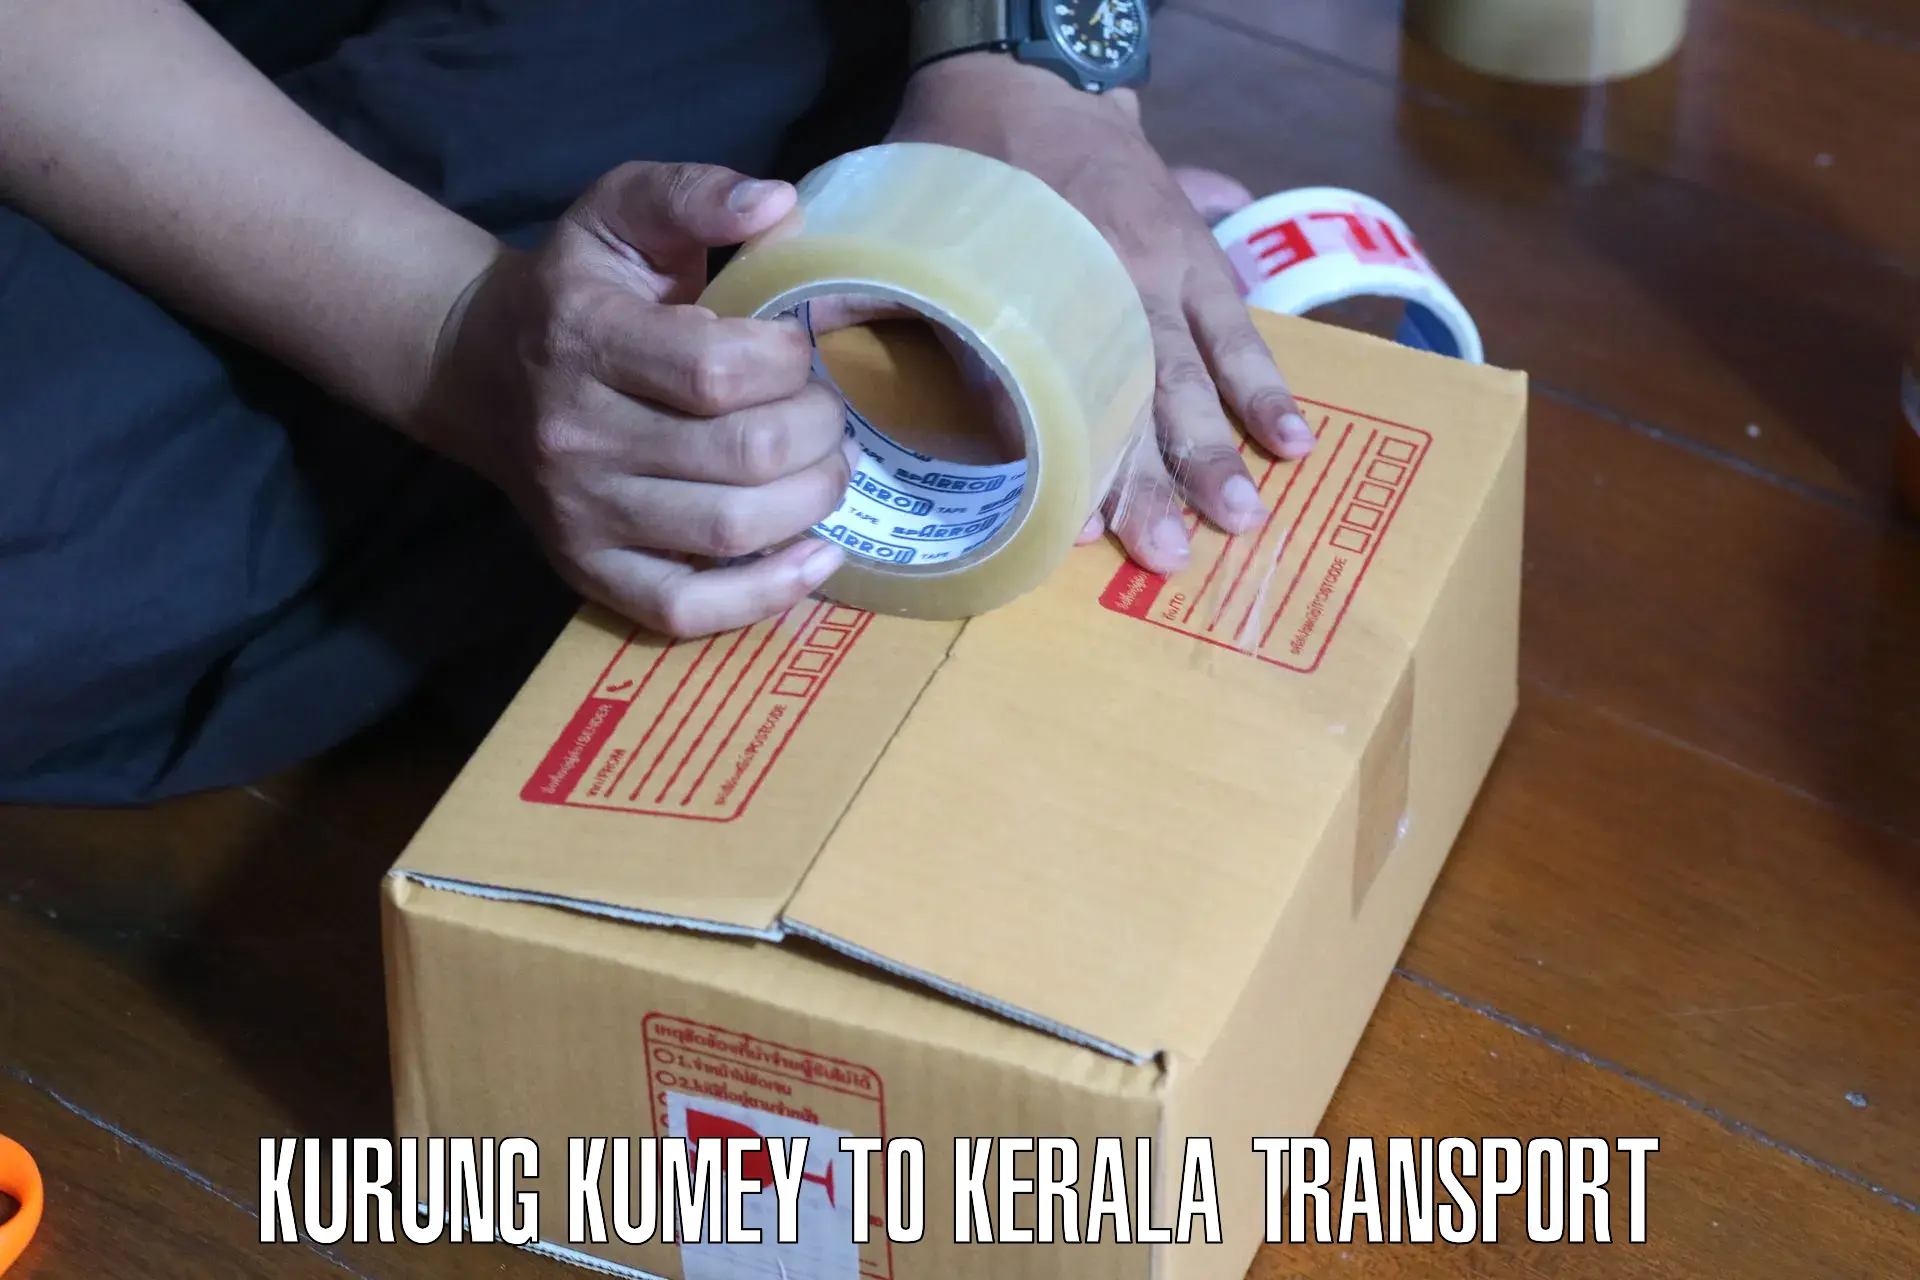 Transportation services Kurung Kumey to Calicut